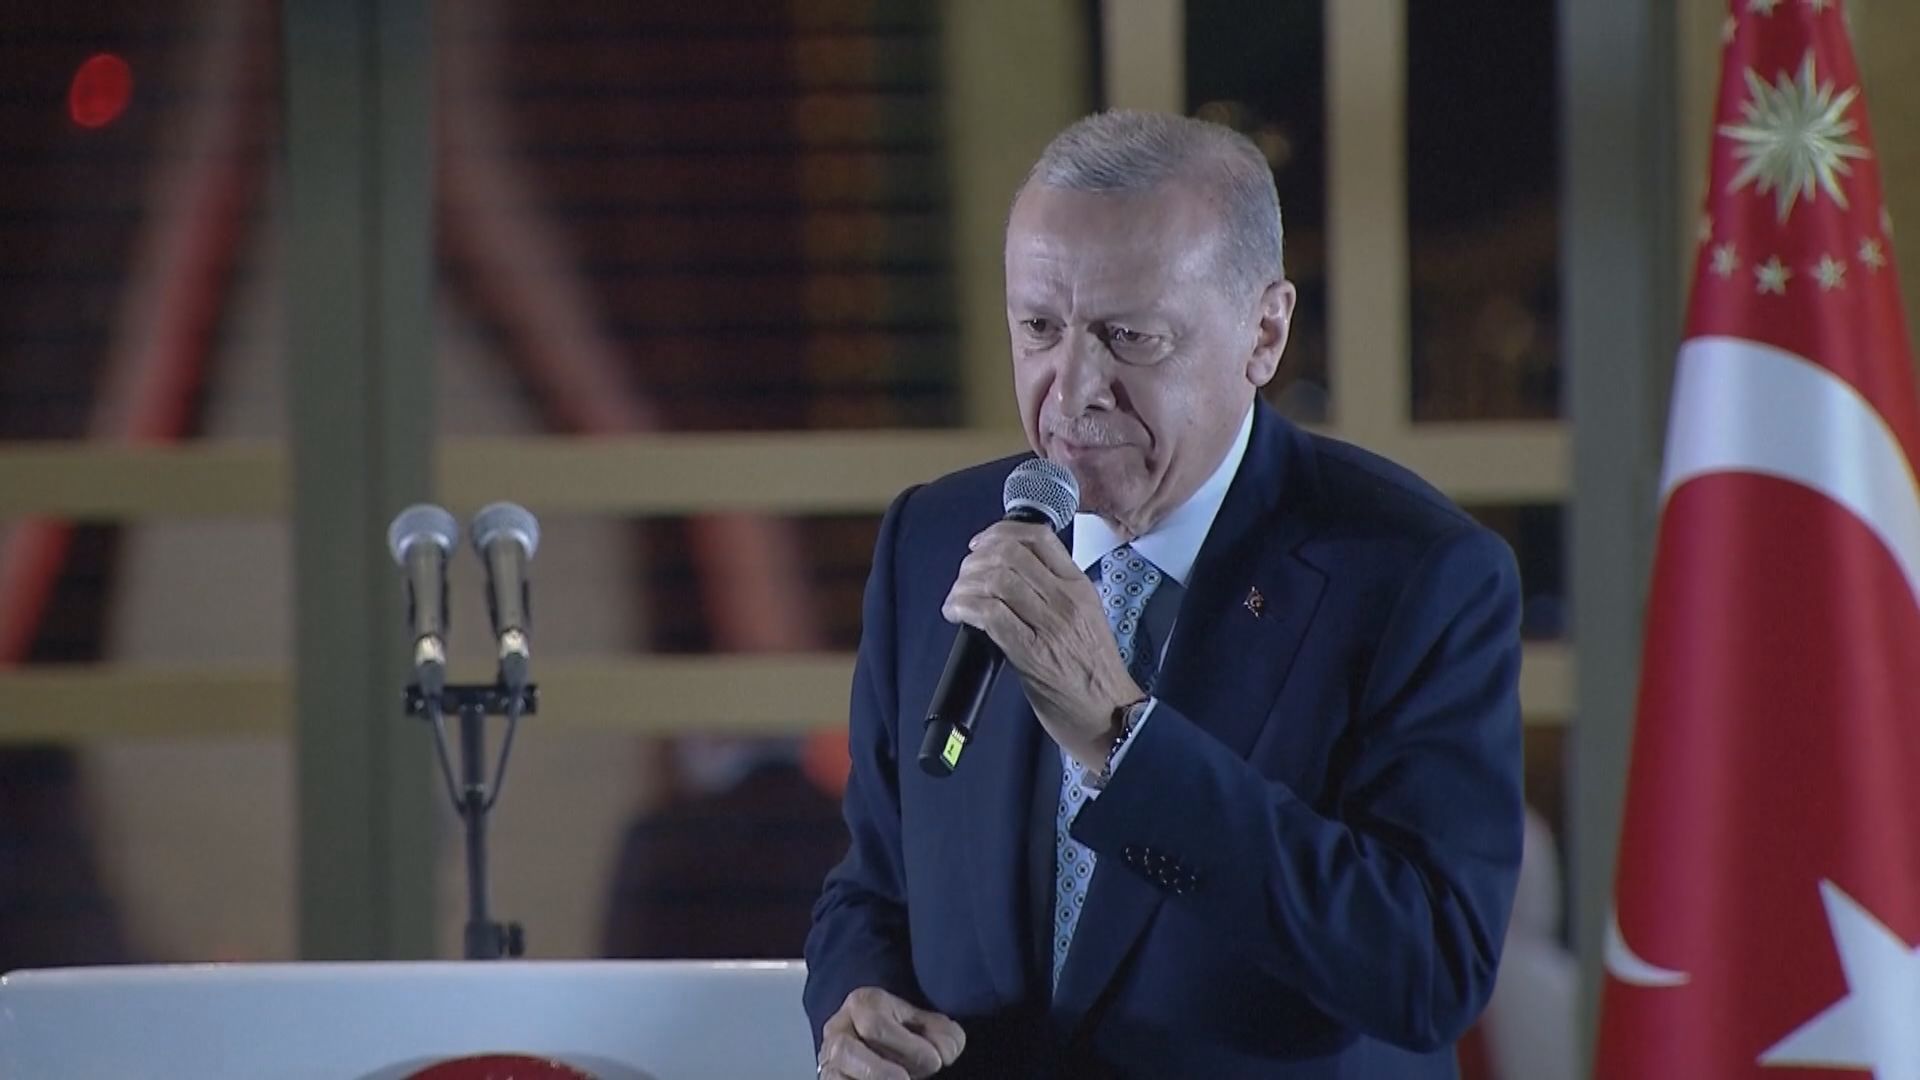 土耳其總統選舉次輪投票 埃爾多安成功連任